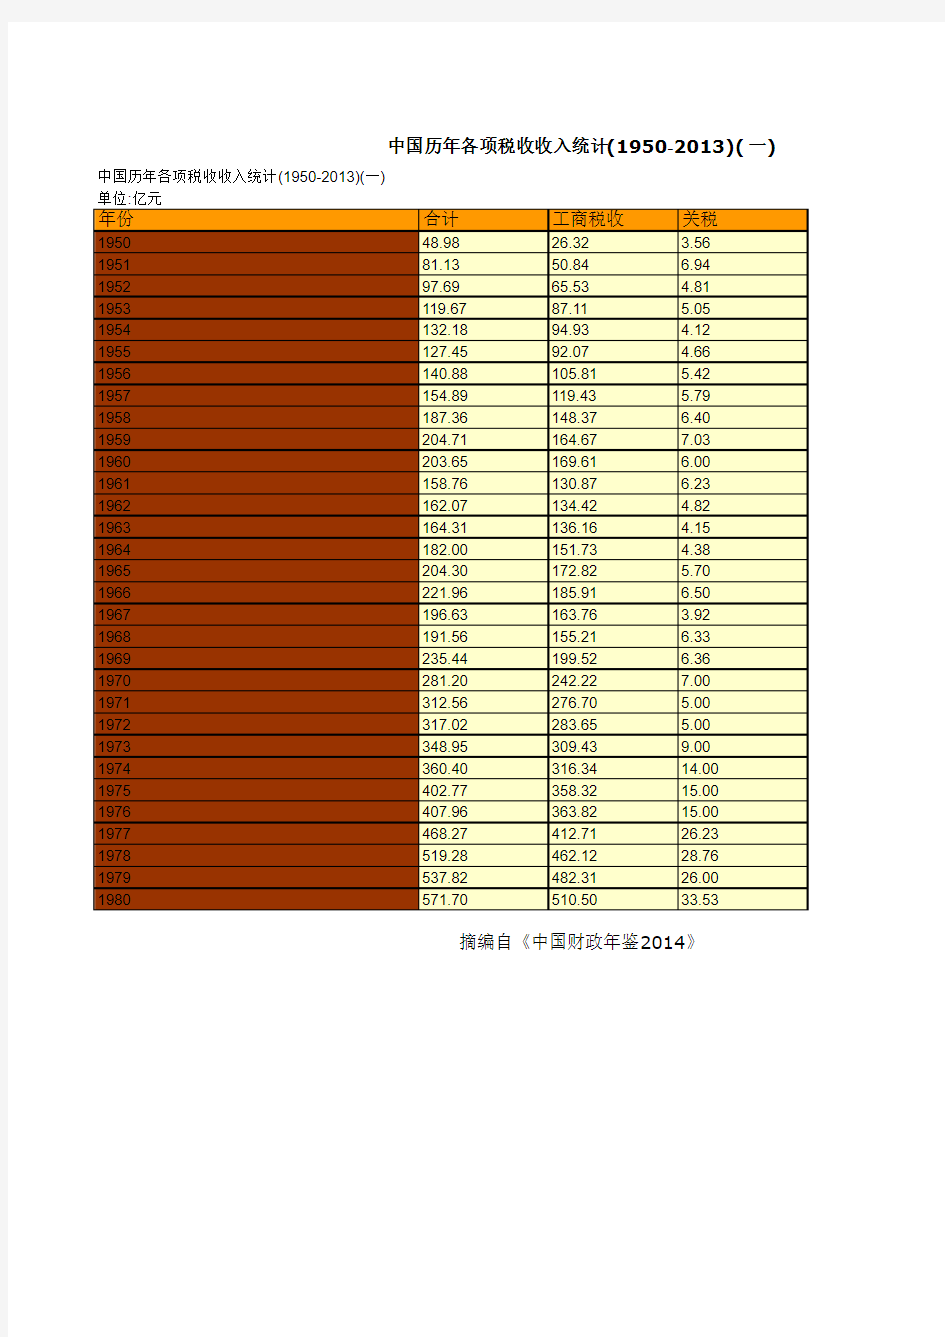 中国财政年鉴2014指标数据：中国历年各项税收收入统计(1950-2013)(一)